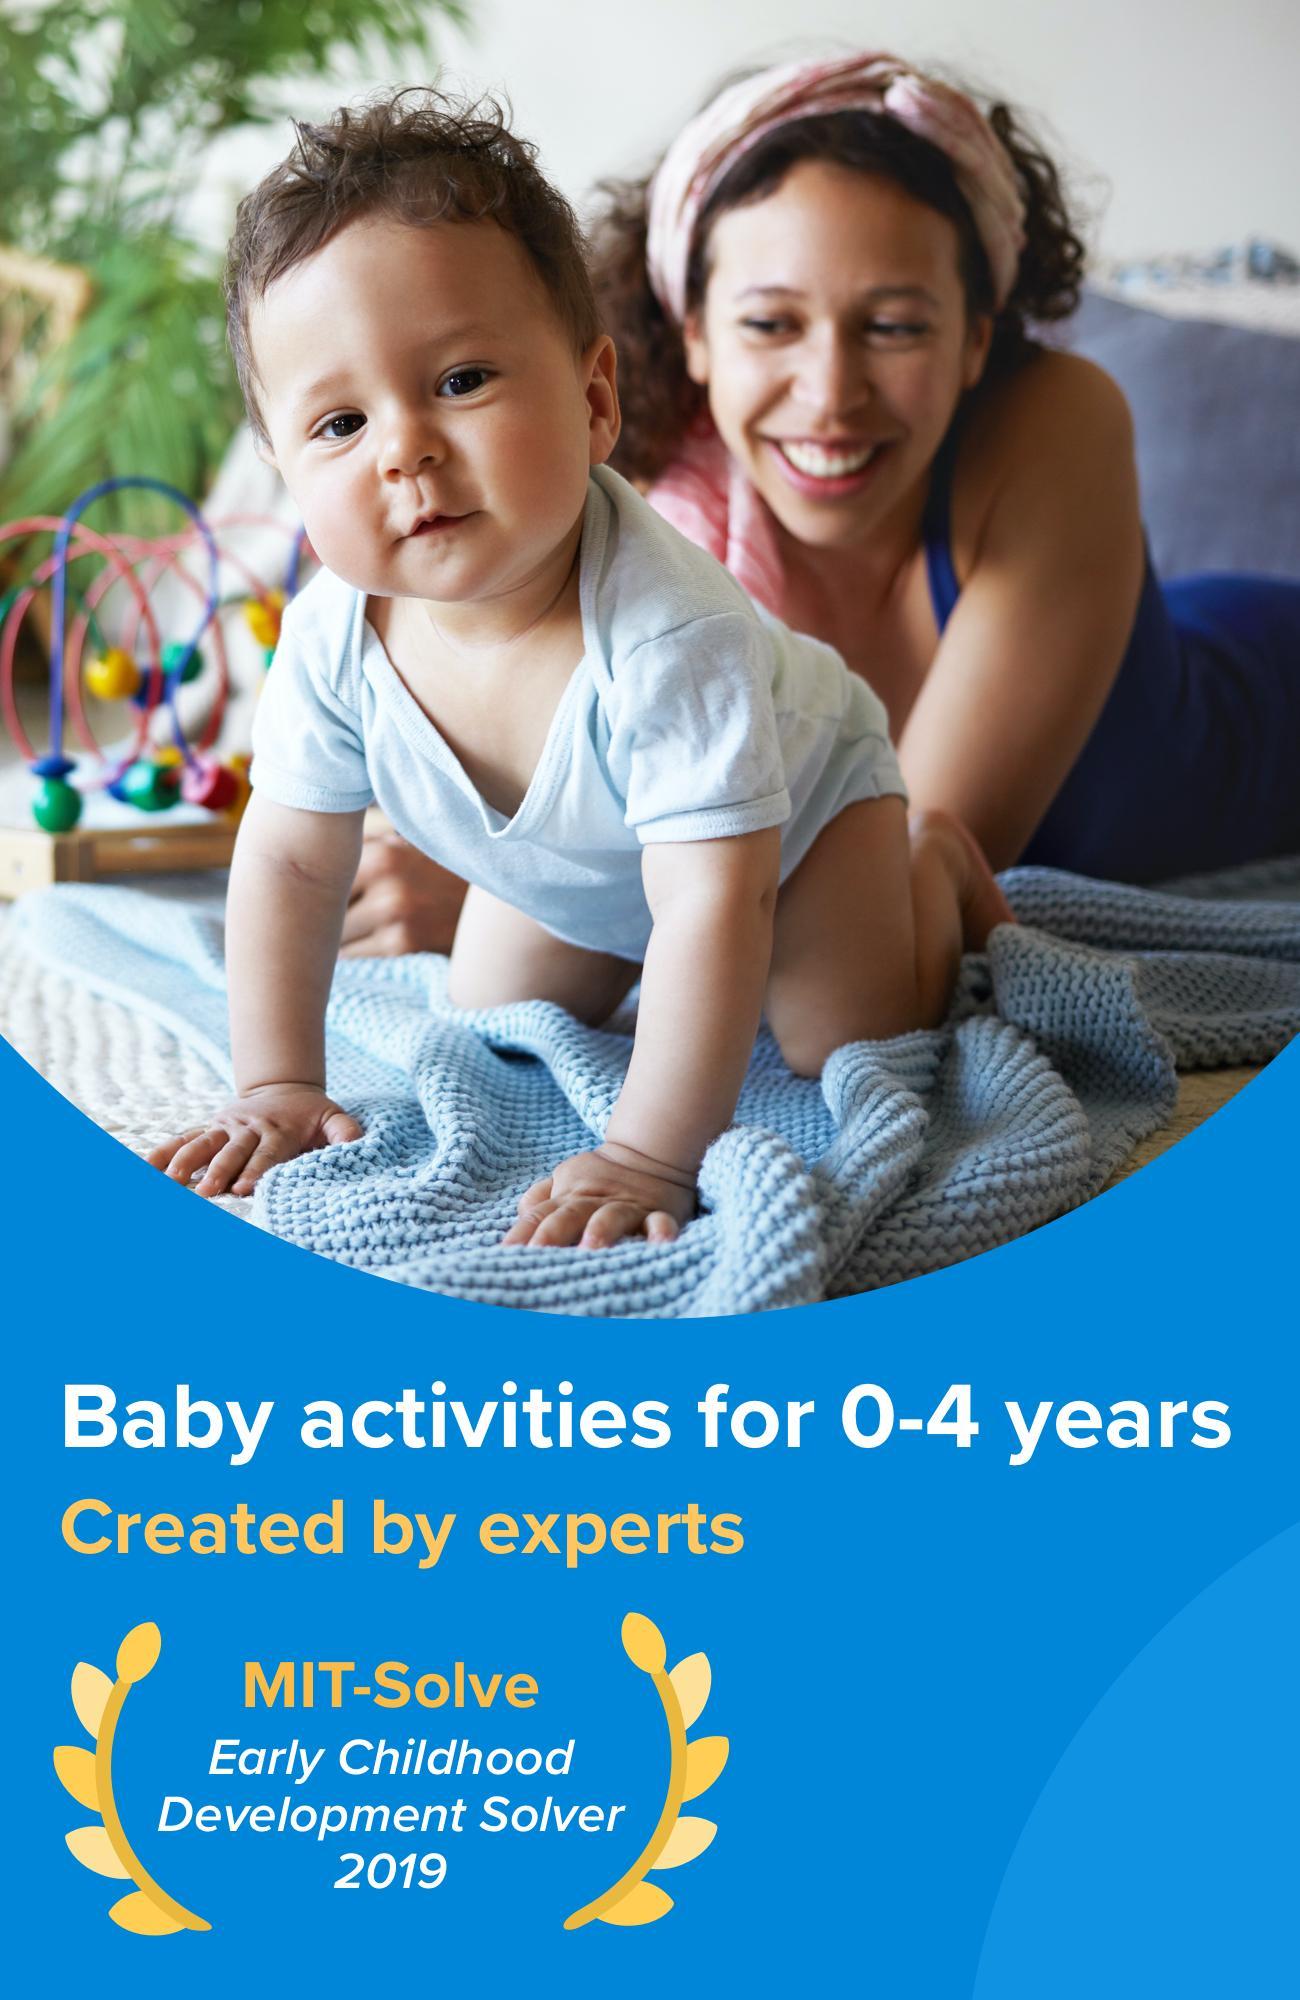 Kinedu Baby Developmental Activities & Milestones 1.37.1 Screenshot 17